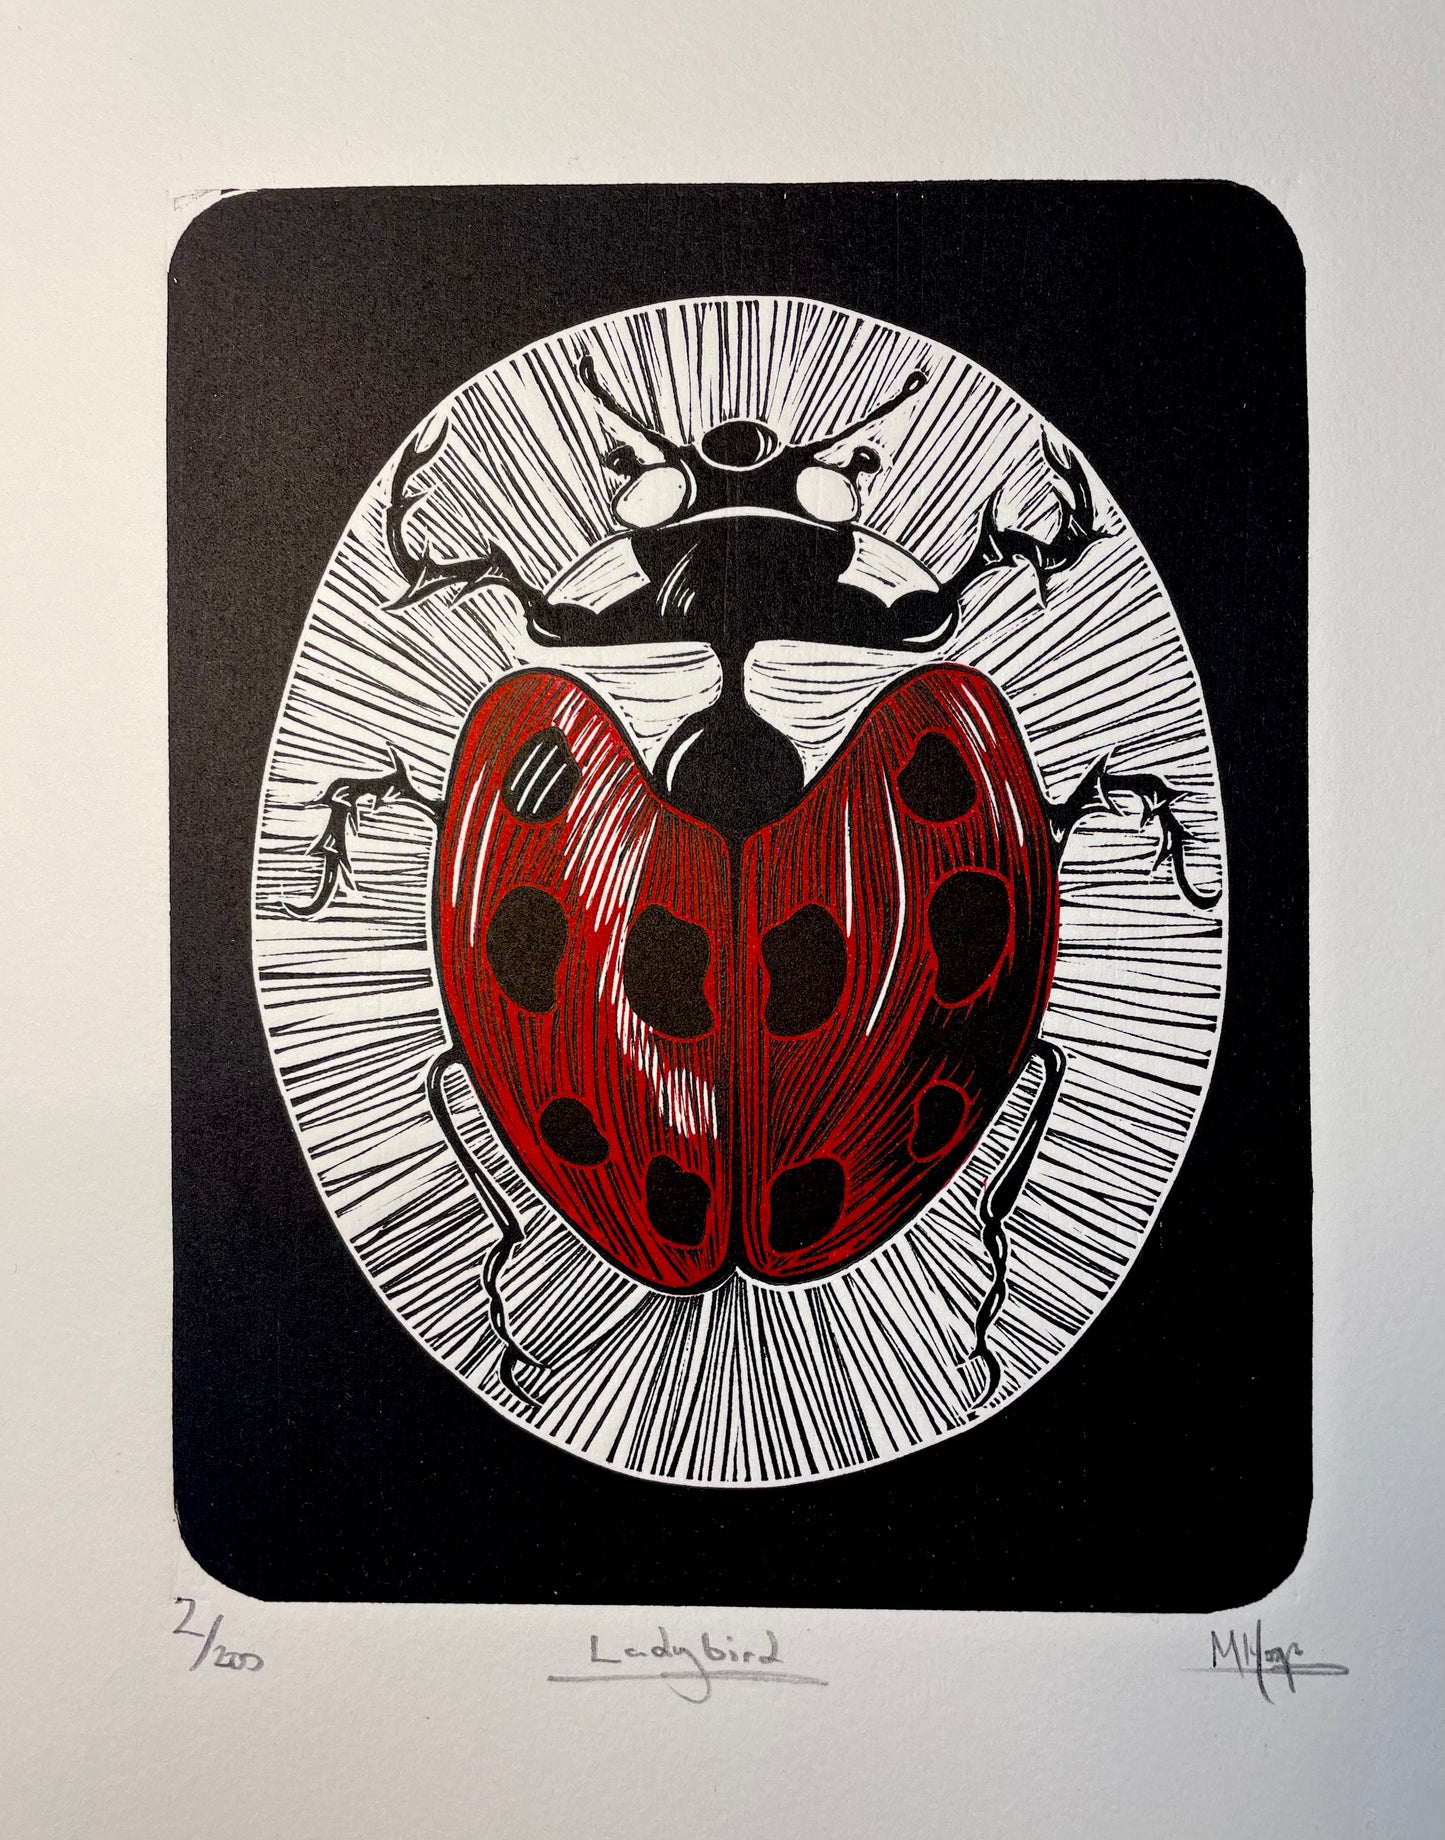 Ladybird Ladybug Linocut print